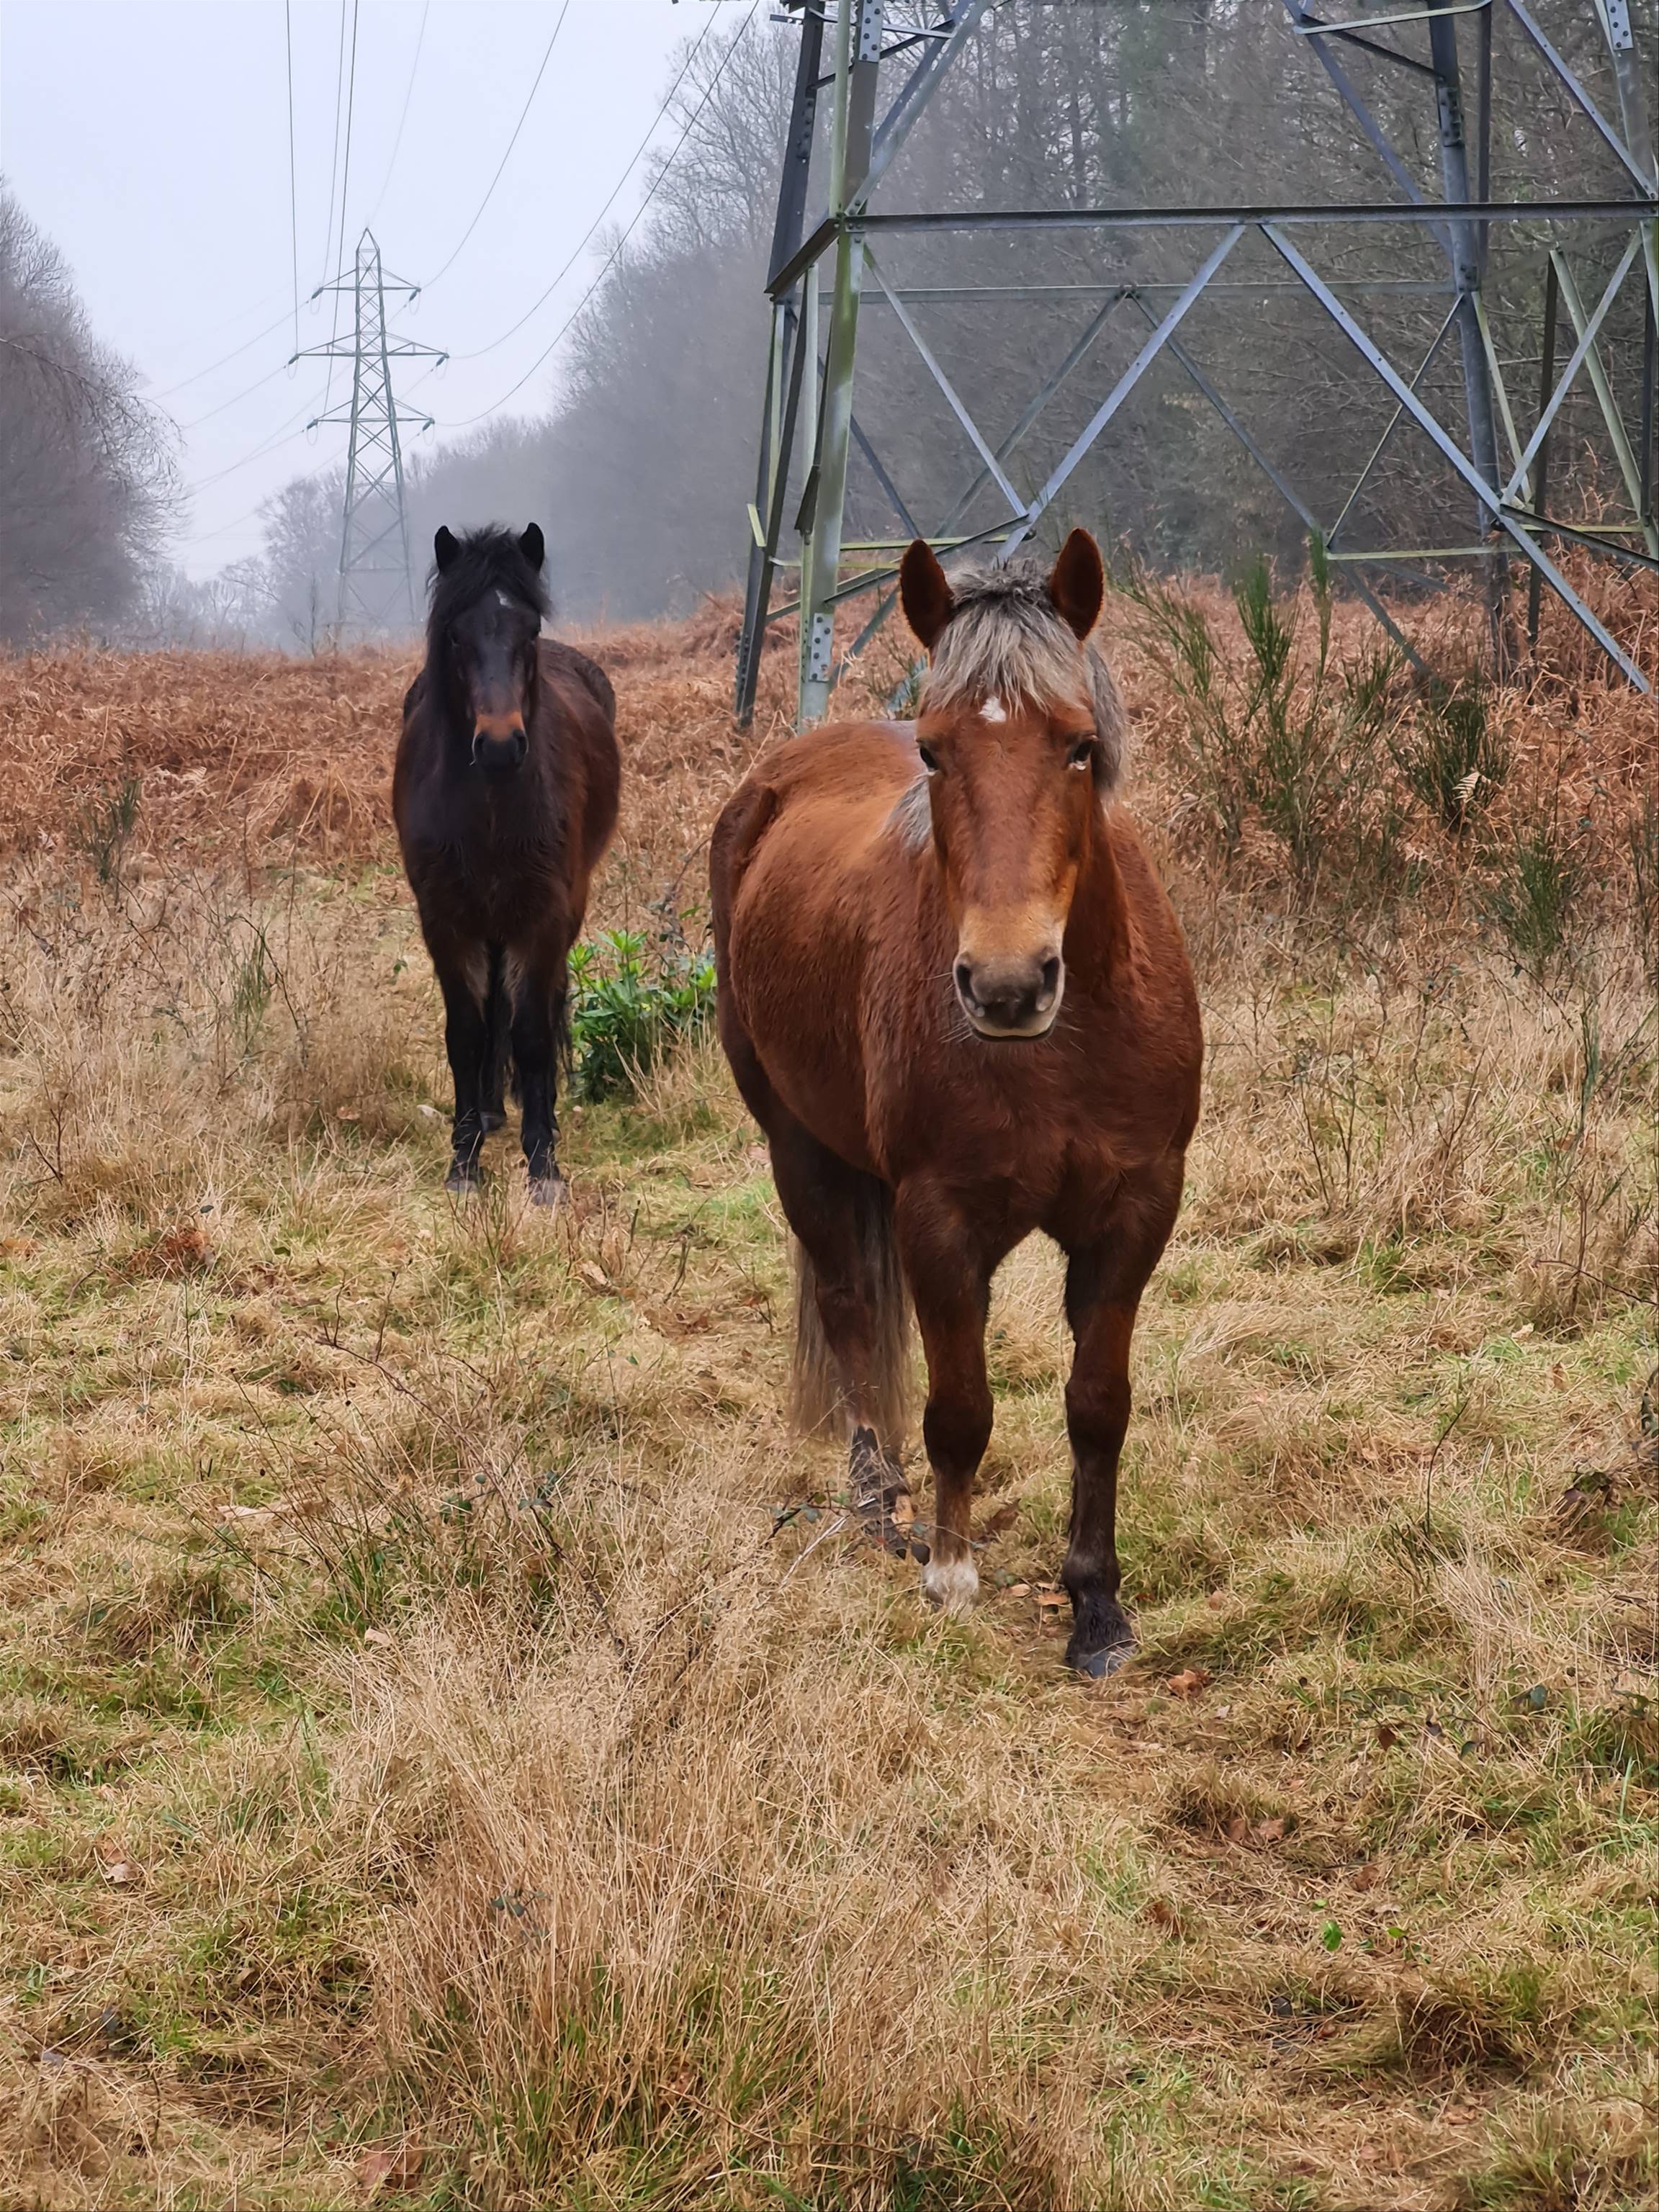 Image Commoner Daniel Drodge’s ponies on grazing land at Hardley Holt. Commoner Daniel Drodge’s ponies on grazing land at Hardley Holt.